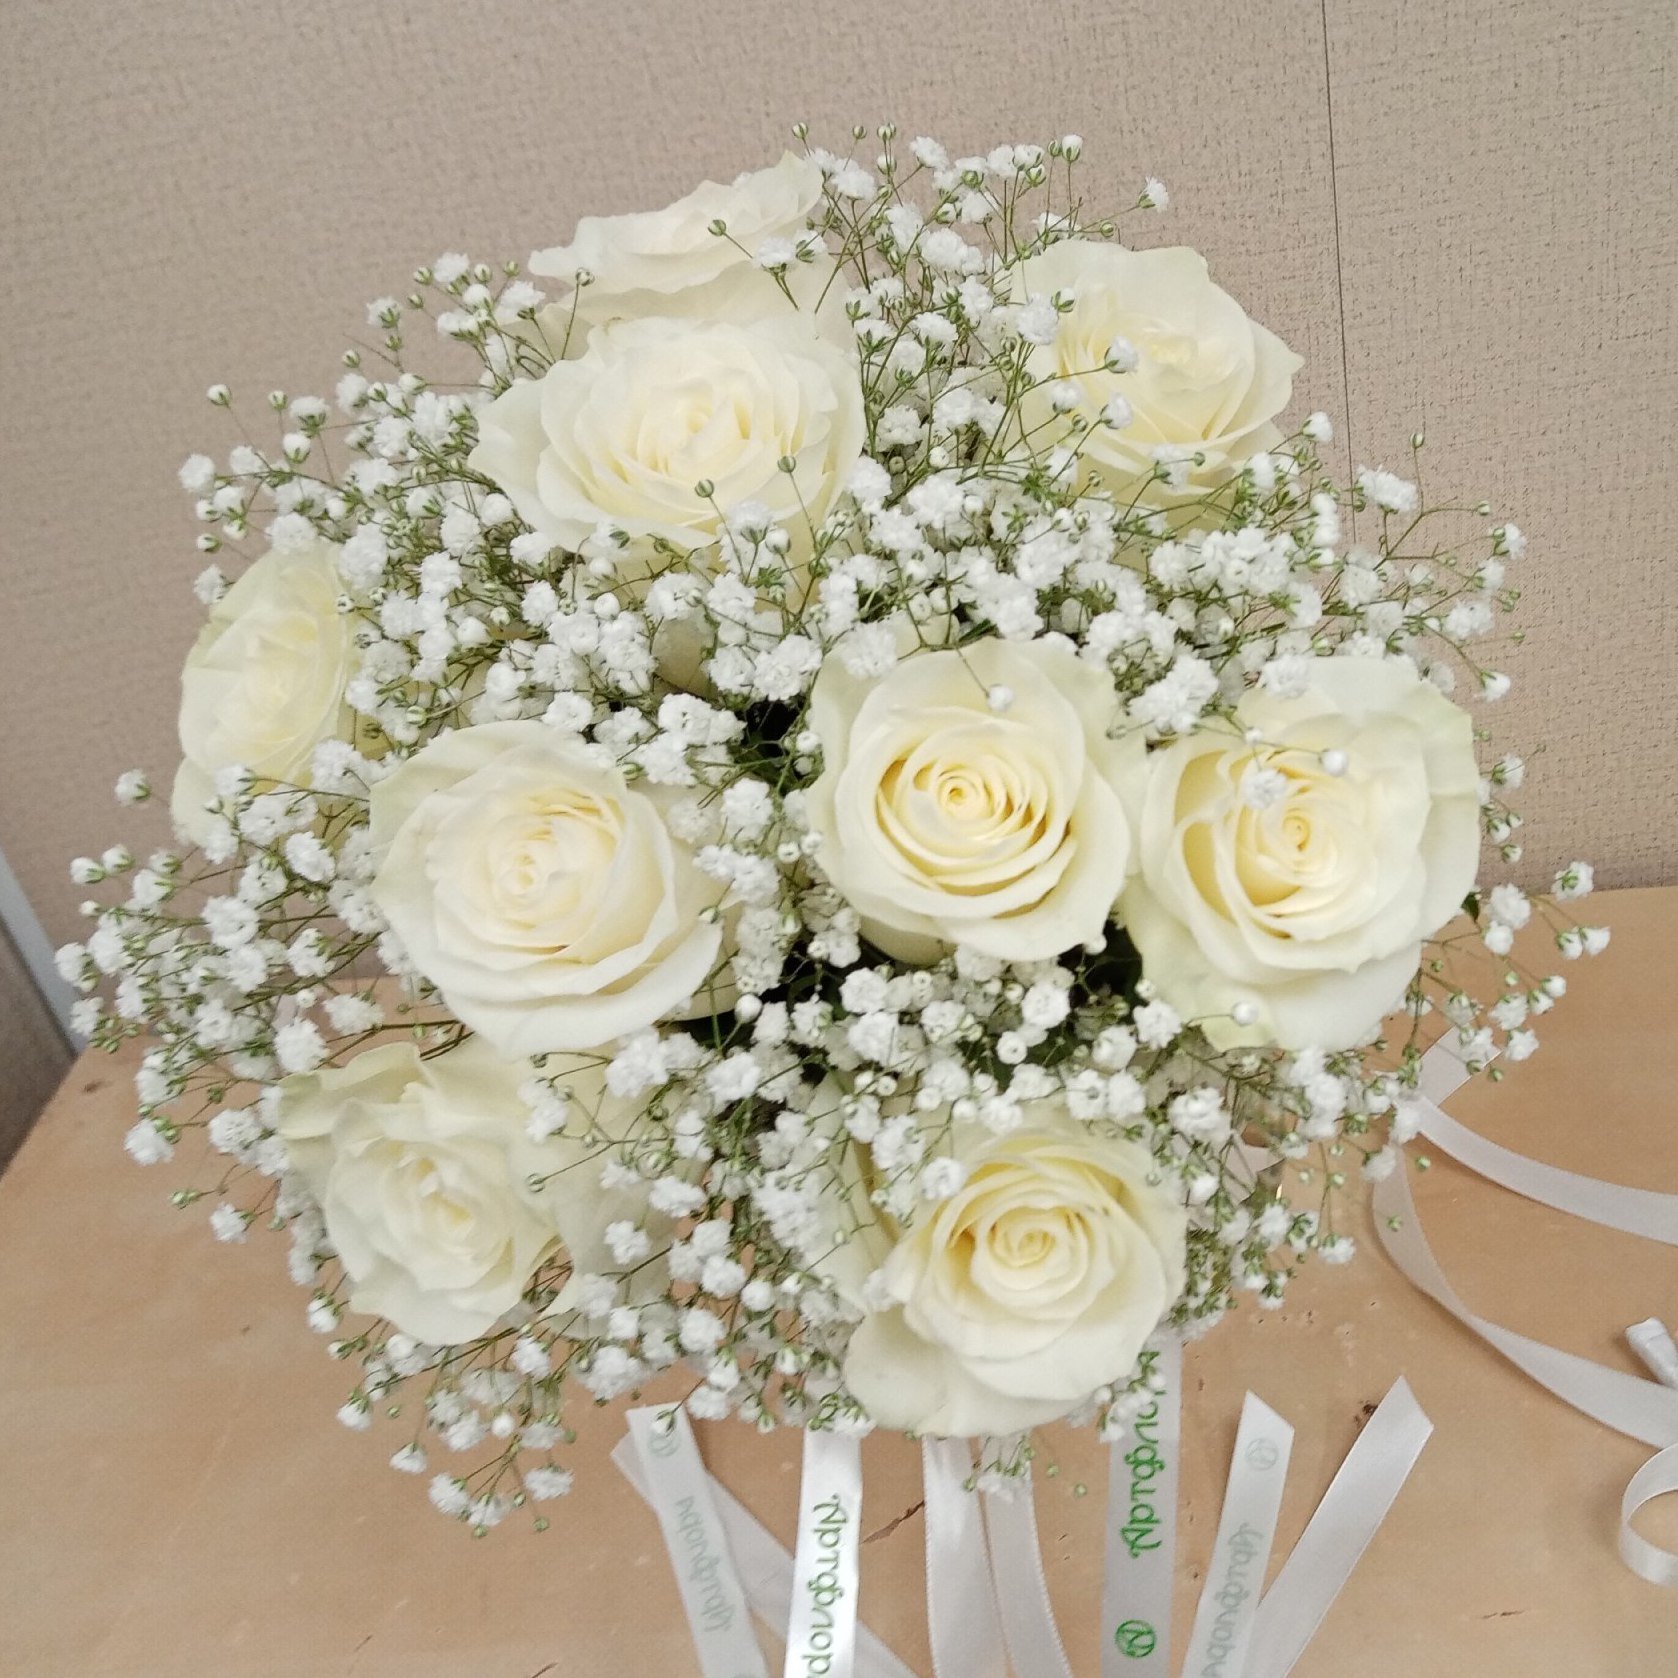 Гипсофилы с белыми розами. Белые розы с гипсофилой. Букет из белых роз с гипсофилой. Букет невесты с белыми розами и гипсофилой. Букет невесты из белых роз с гипсофилой.